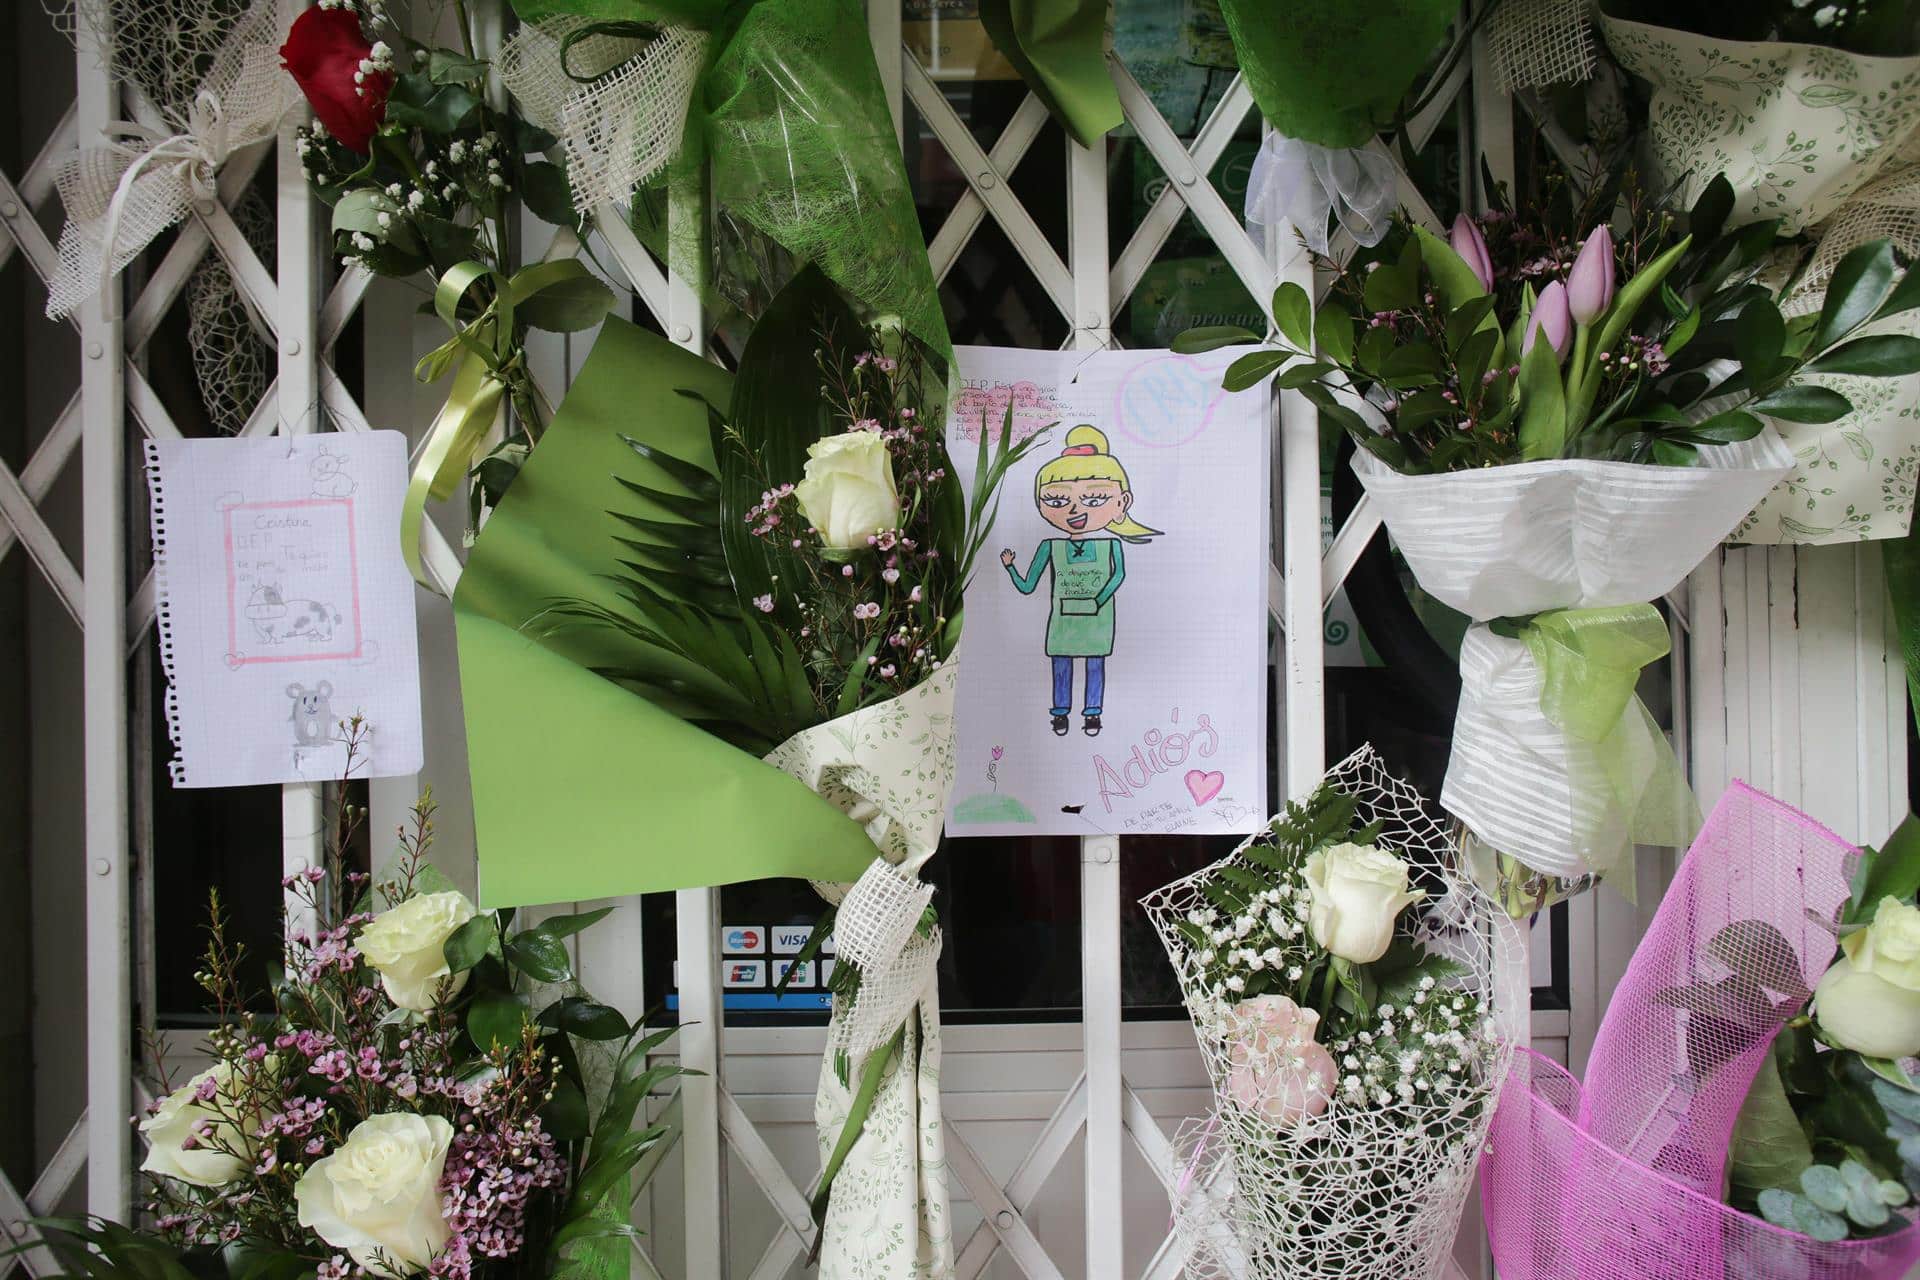 Un dibujo y varias flores colgadas en la tienda de alimentación donde trabajaba la mujer de 42 años muerta a cuchilladas en Lugo | EP